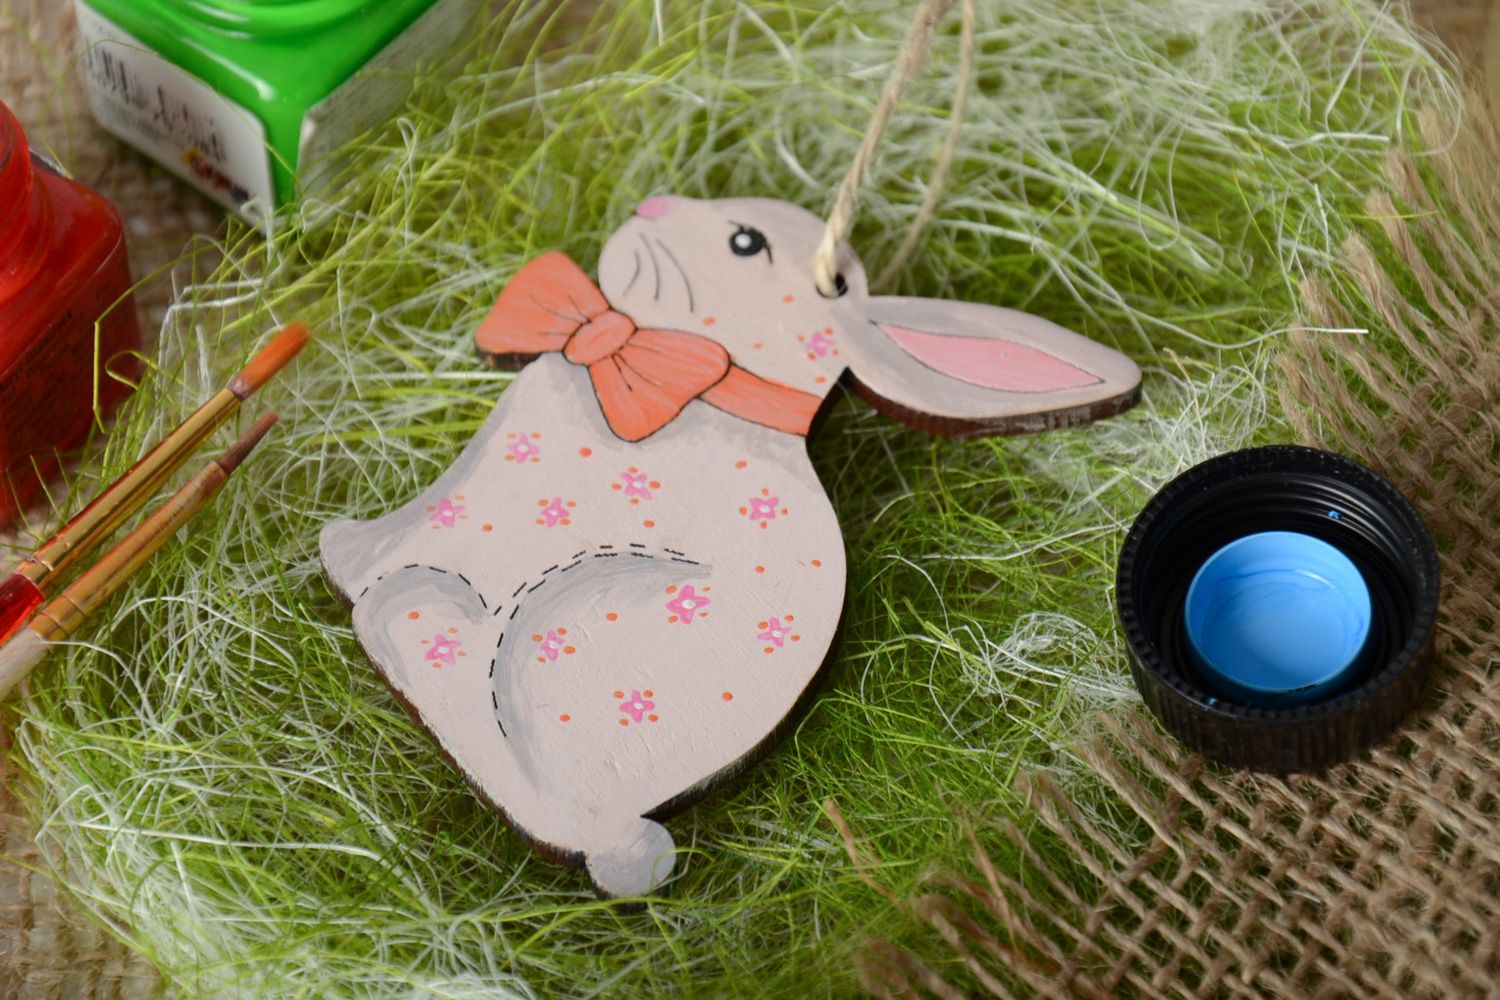 Фанерная интерьерная подвеска пасхальная в виде кролика с росписью фото 1